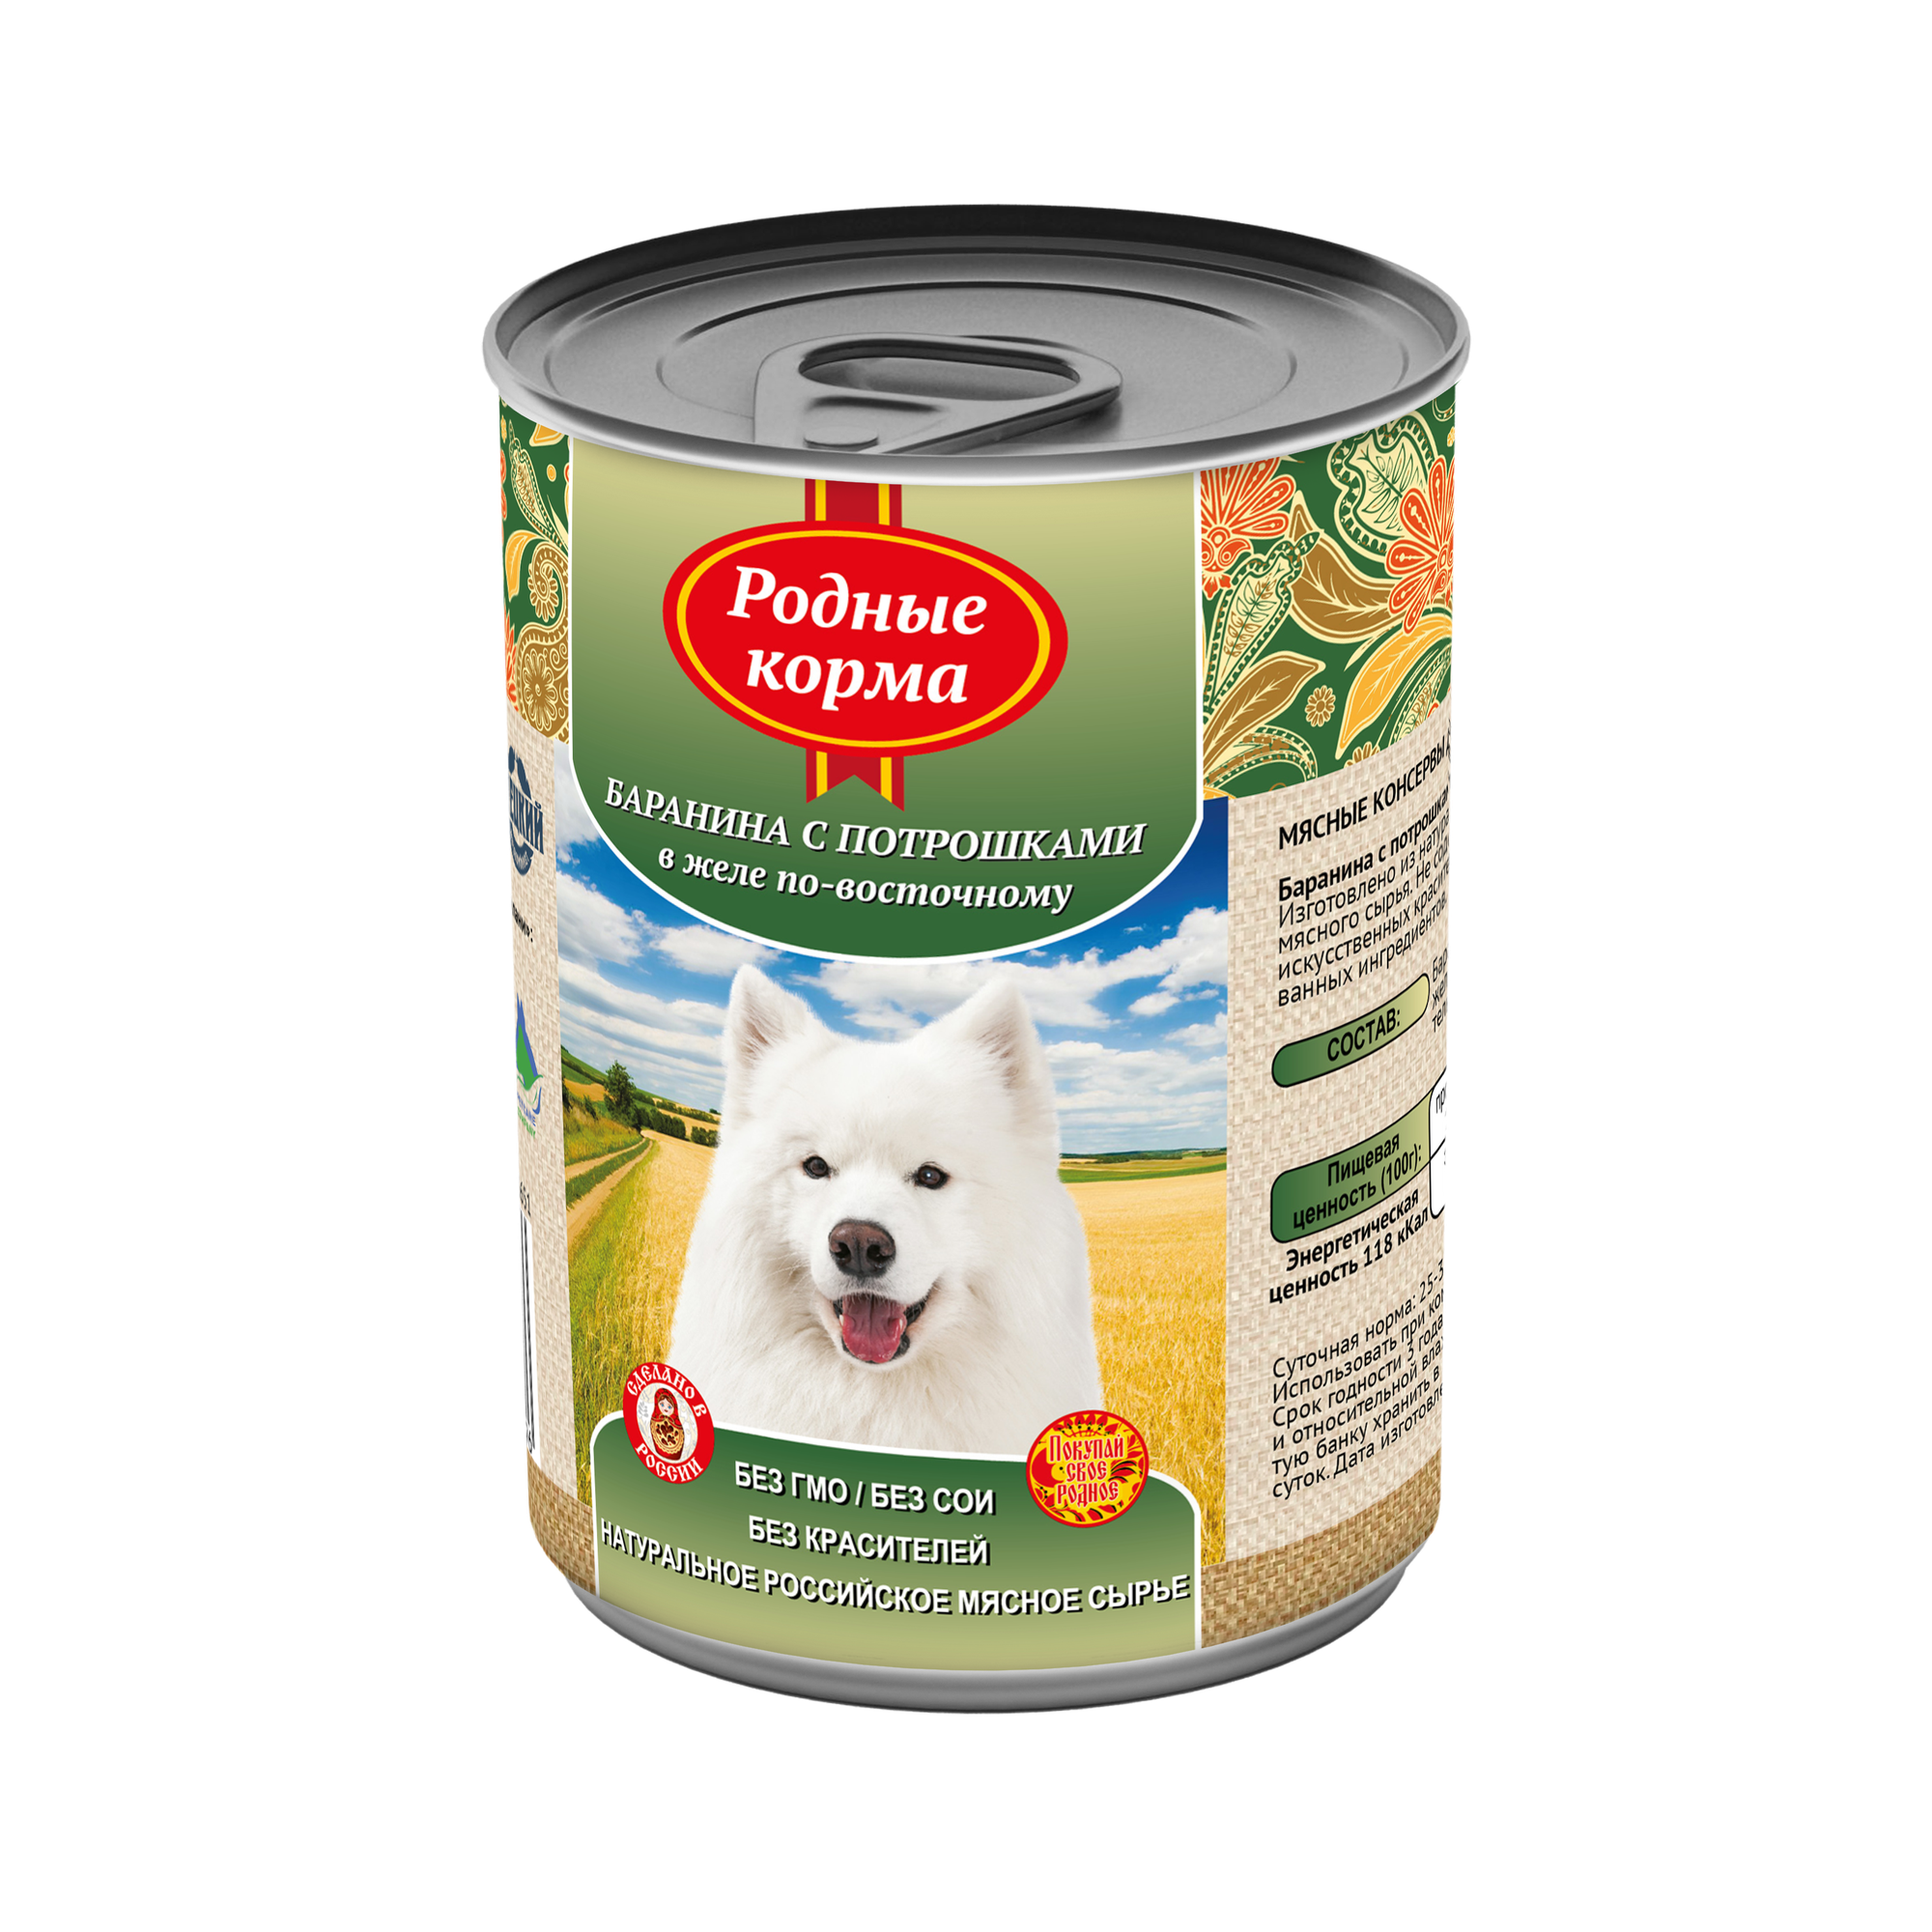 Родные корма 970 г консервы для собак баранина с потрошками в желе по-восточному